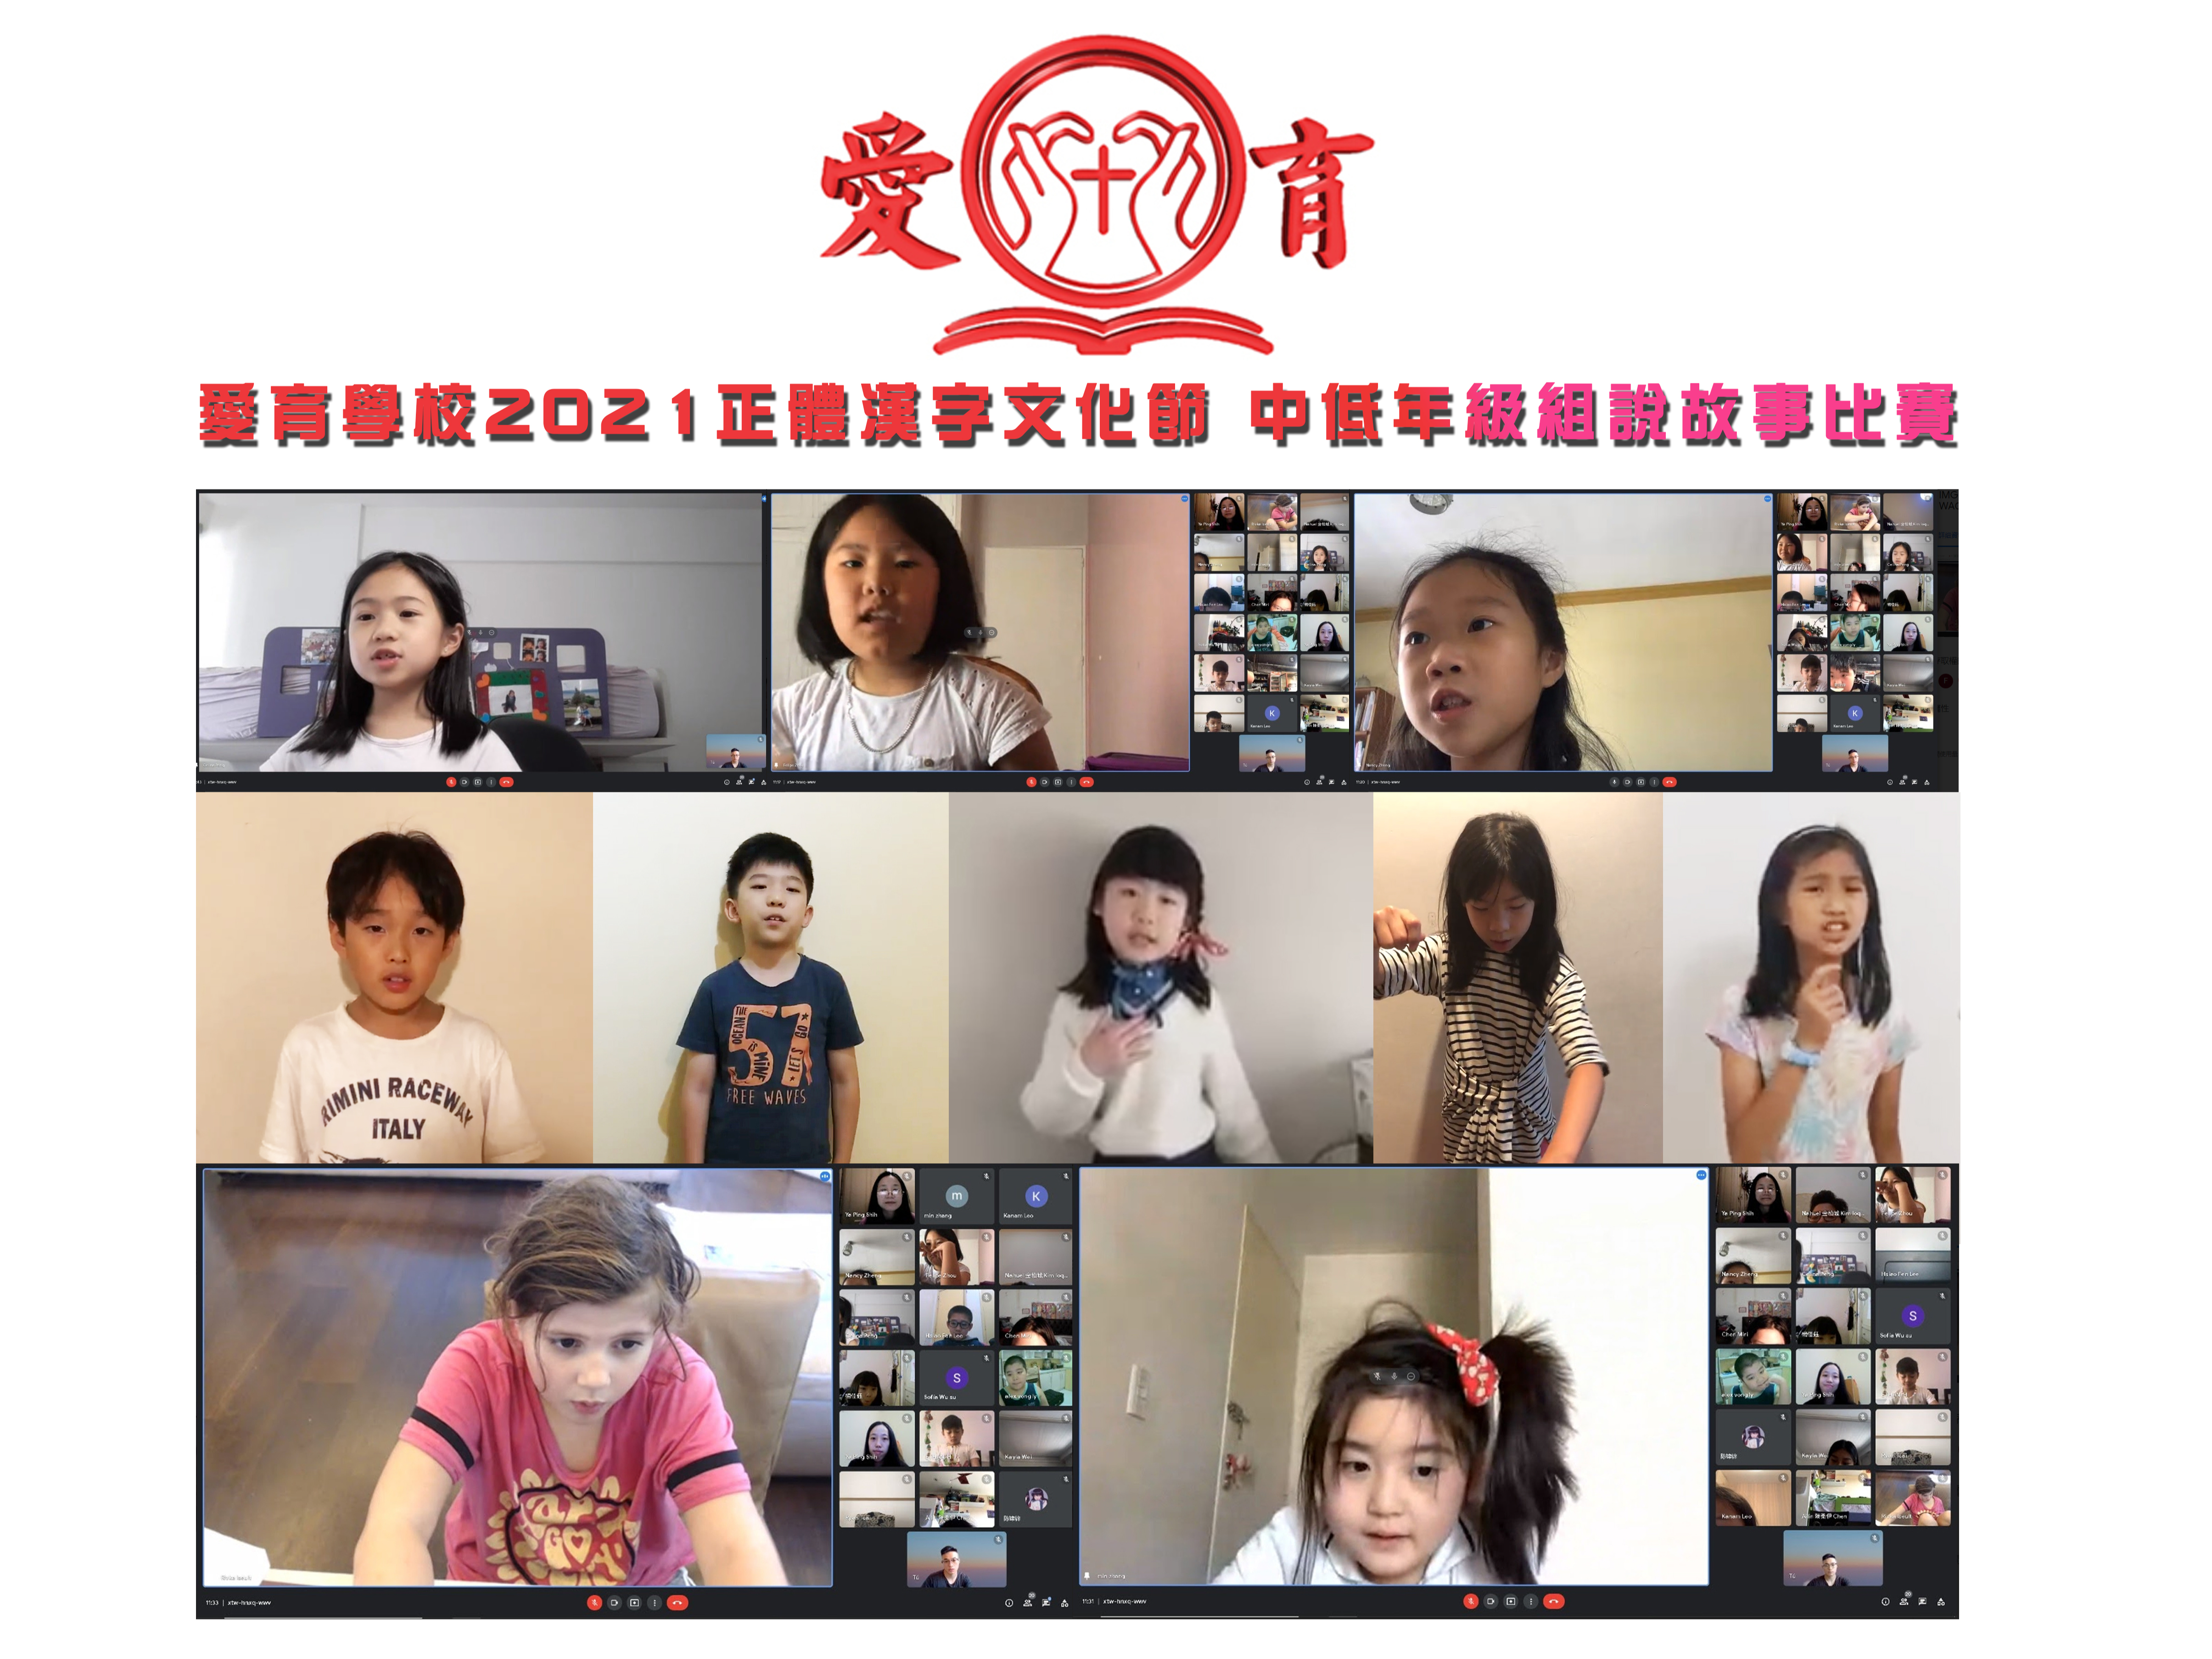 110學年度愛育學校 正體漢字文化節「中低年級組說故事比賽」圖片